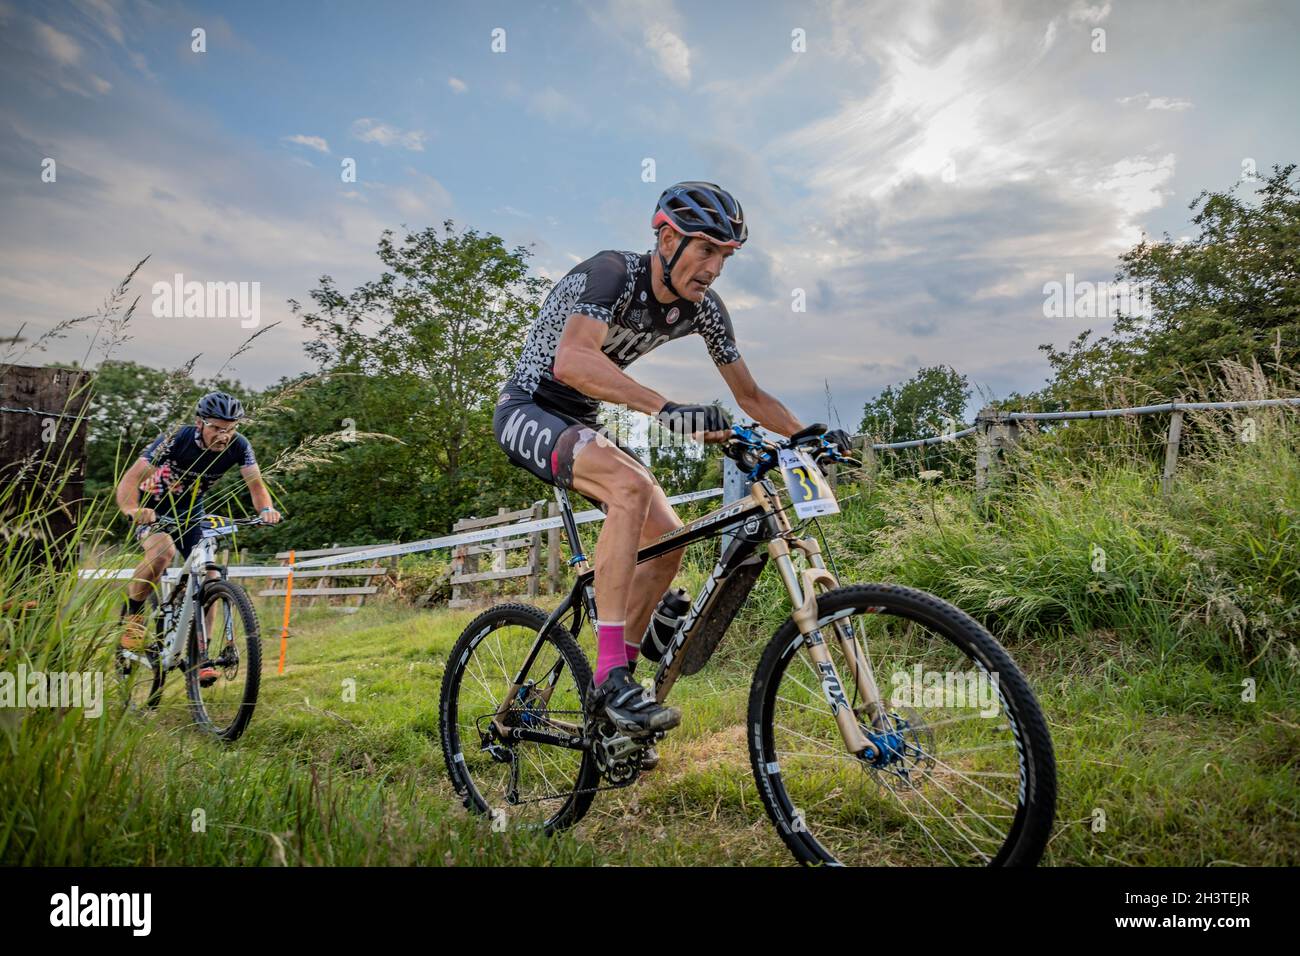 Mountain bike races, Kirkley, Ponteland, Northumberland, England, UK, GB, England, Europe Stock Photo